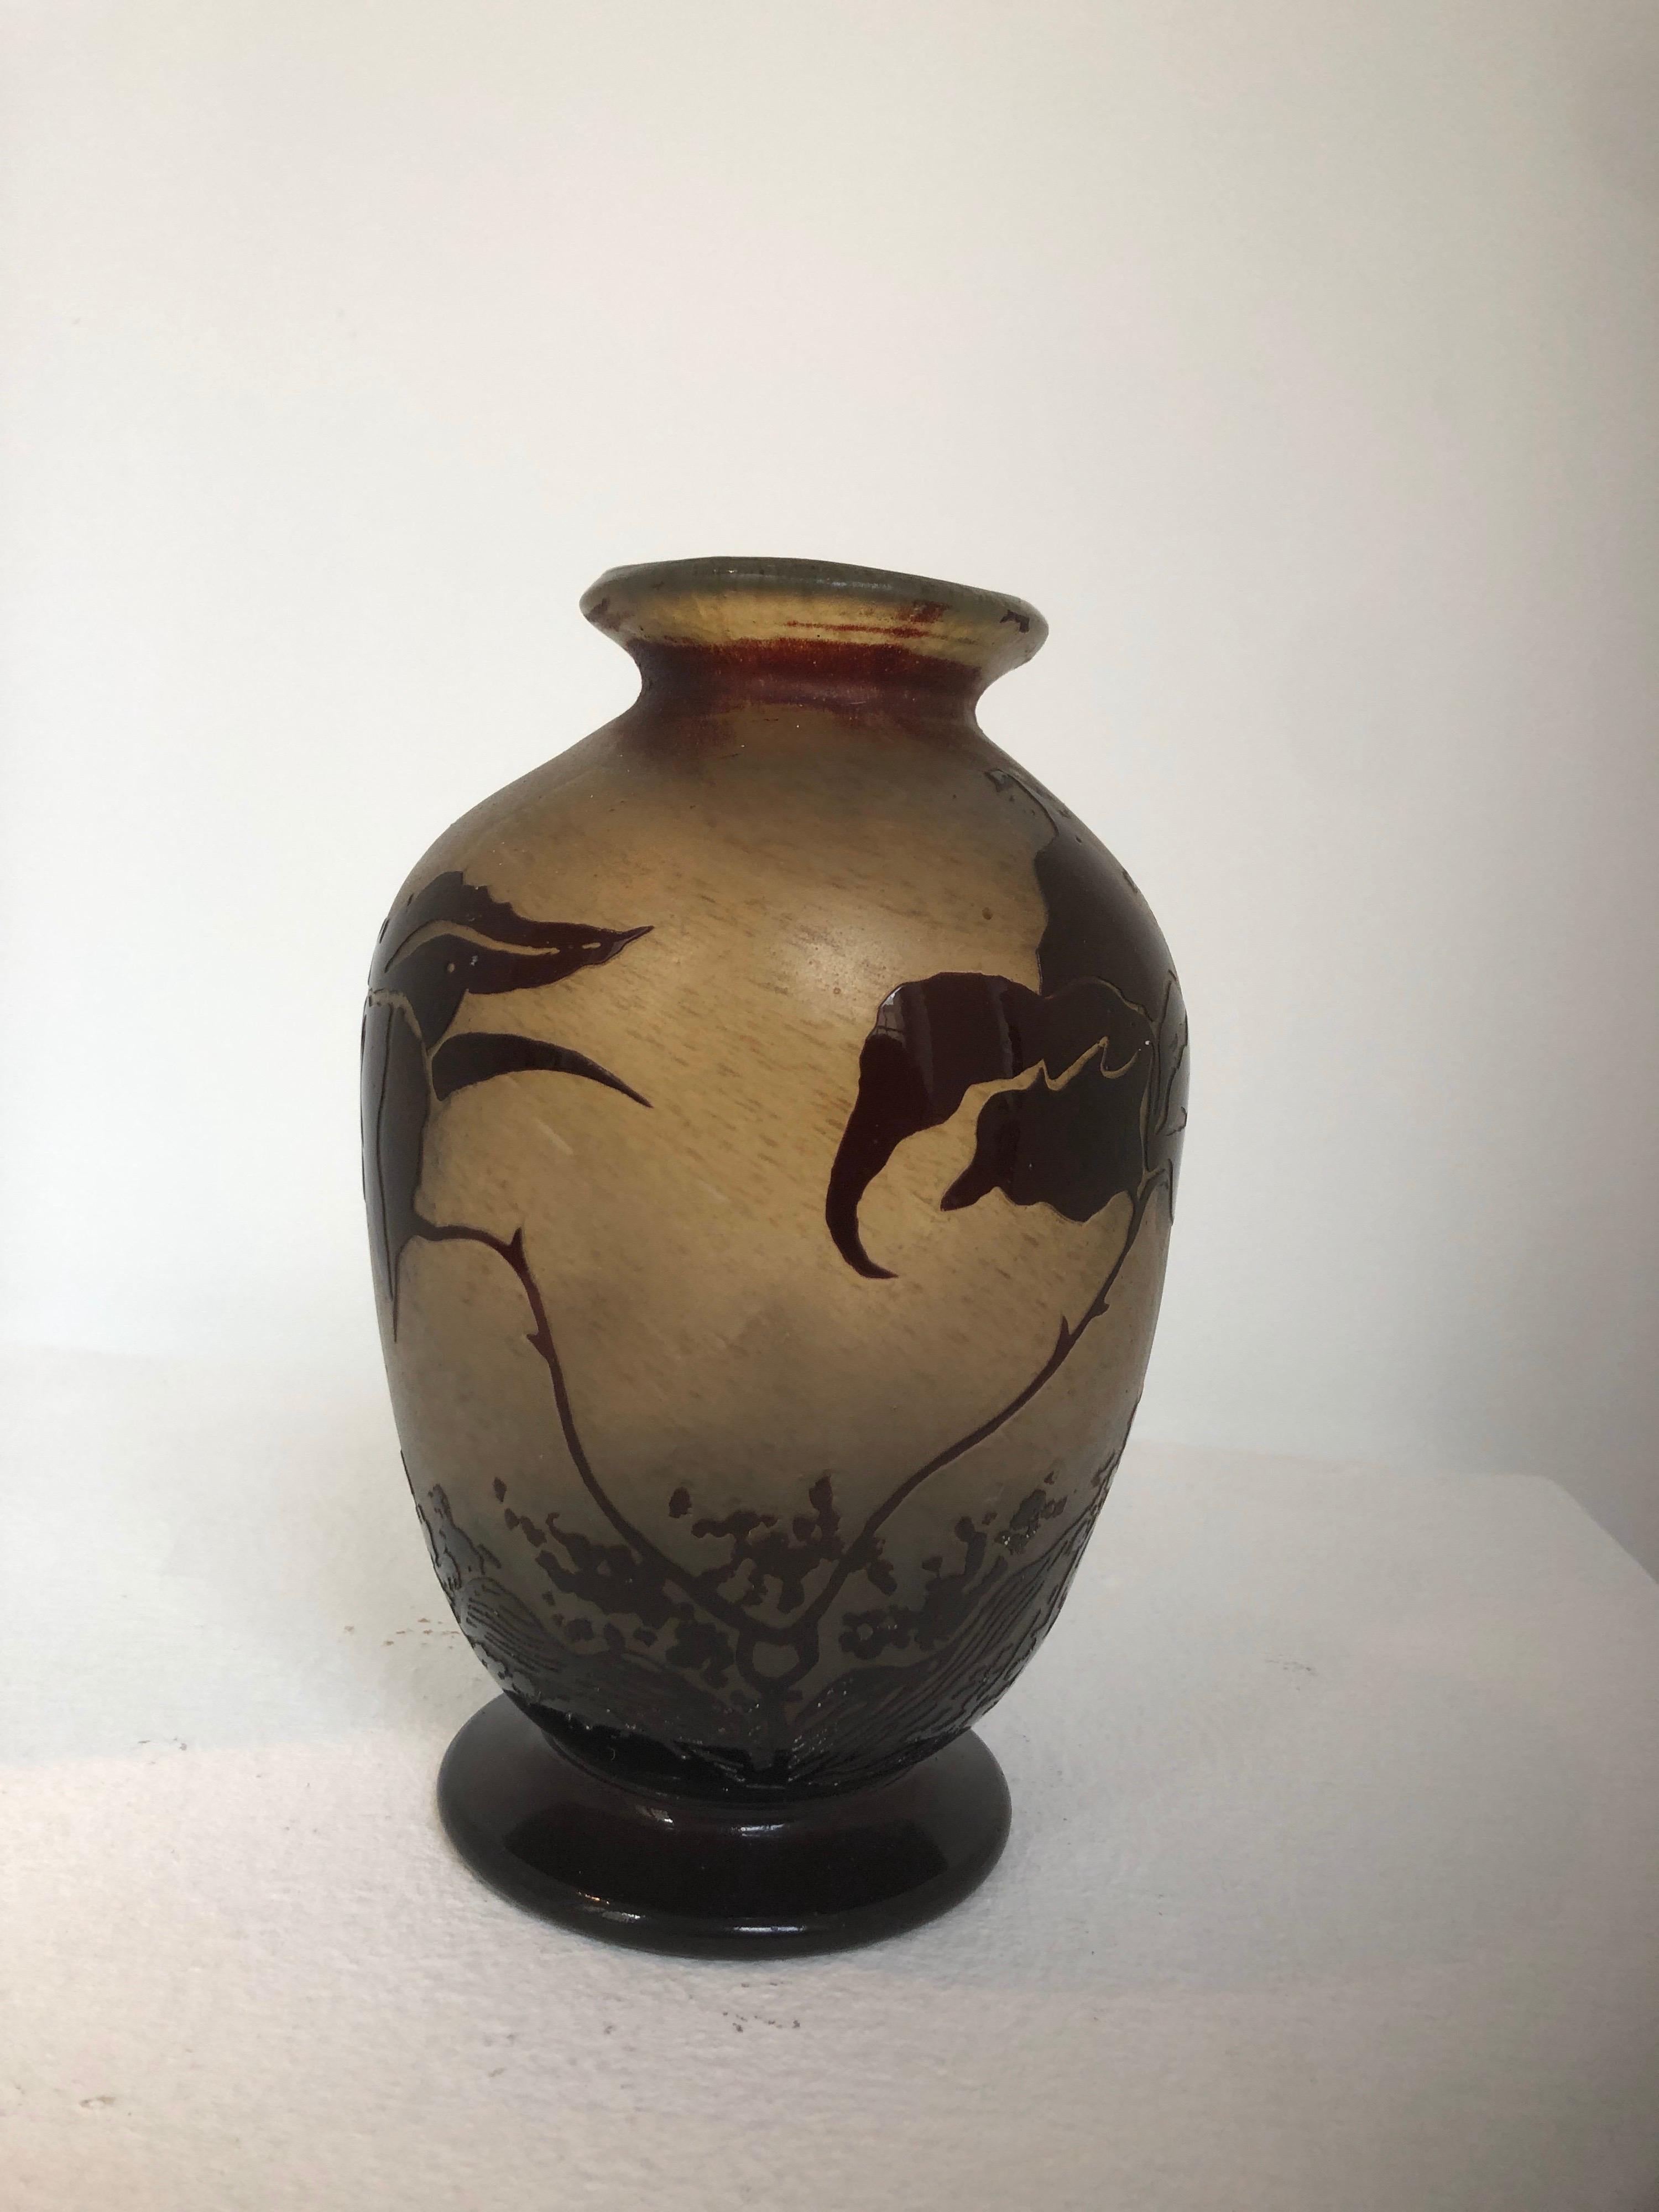 Joli vase en verre soufflé en verre multicouche acide clarifié Benor avec décoration florale.
Il s'agit d'une production de verrerie d'art de l'île de Bendor.
Signé, en haut, Bendor.